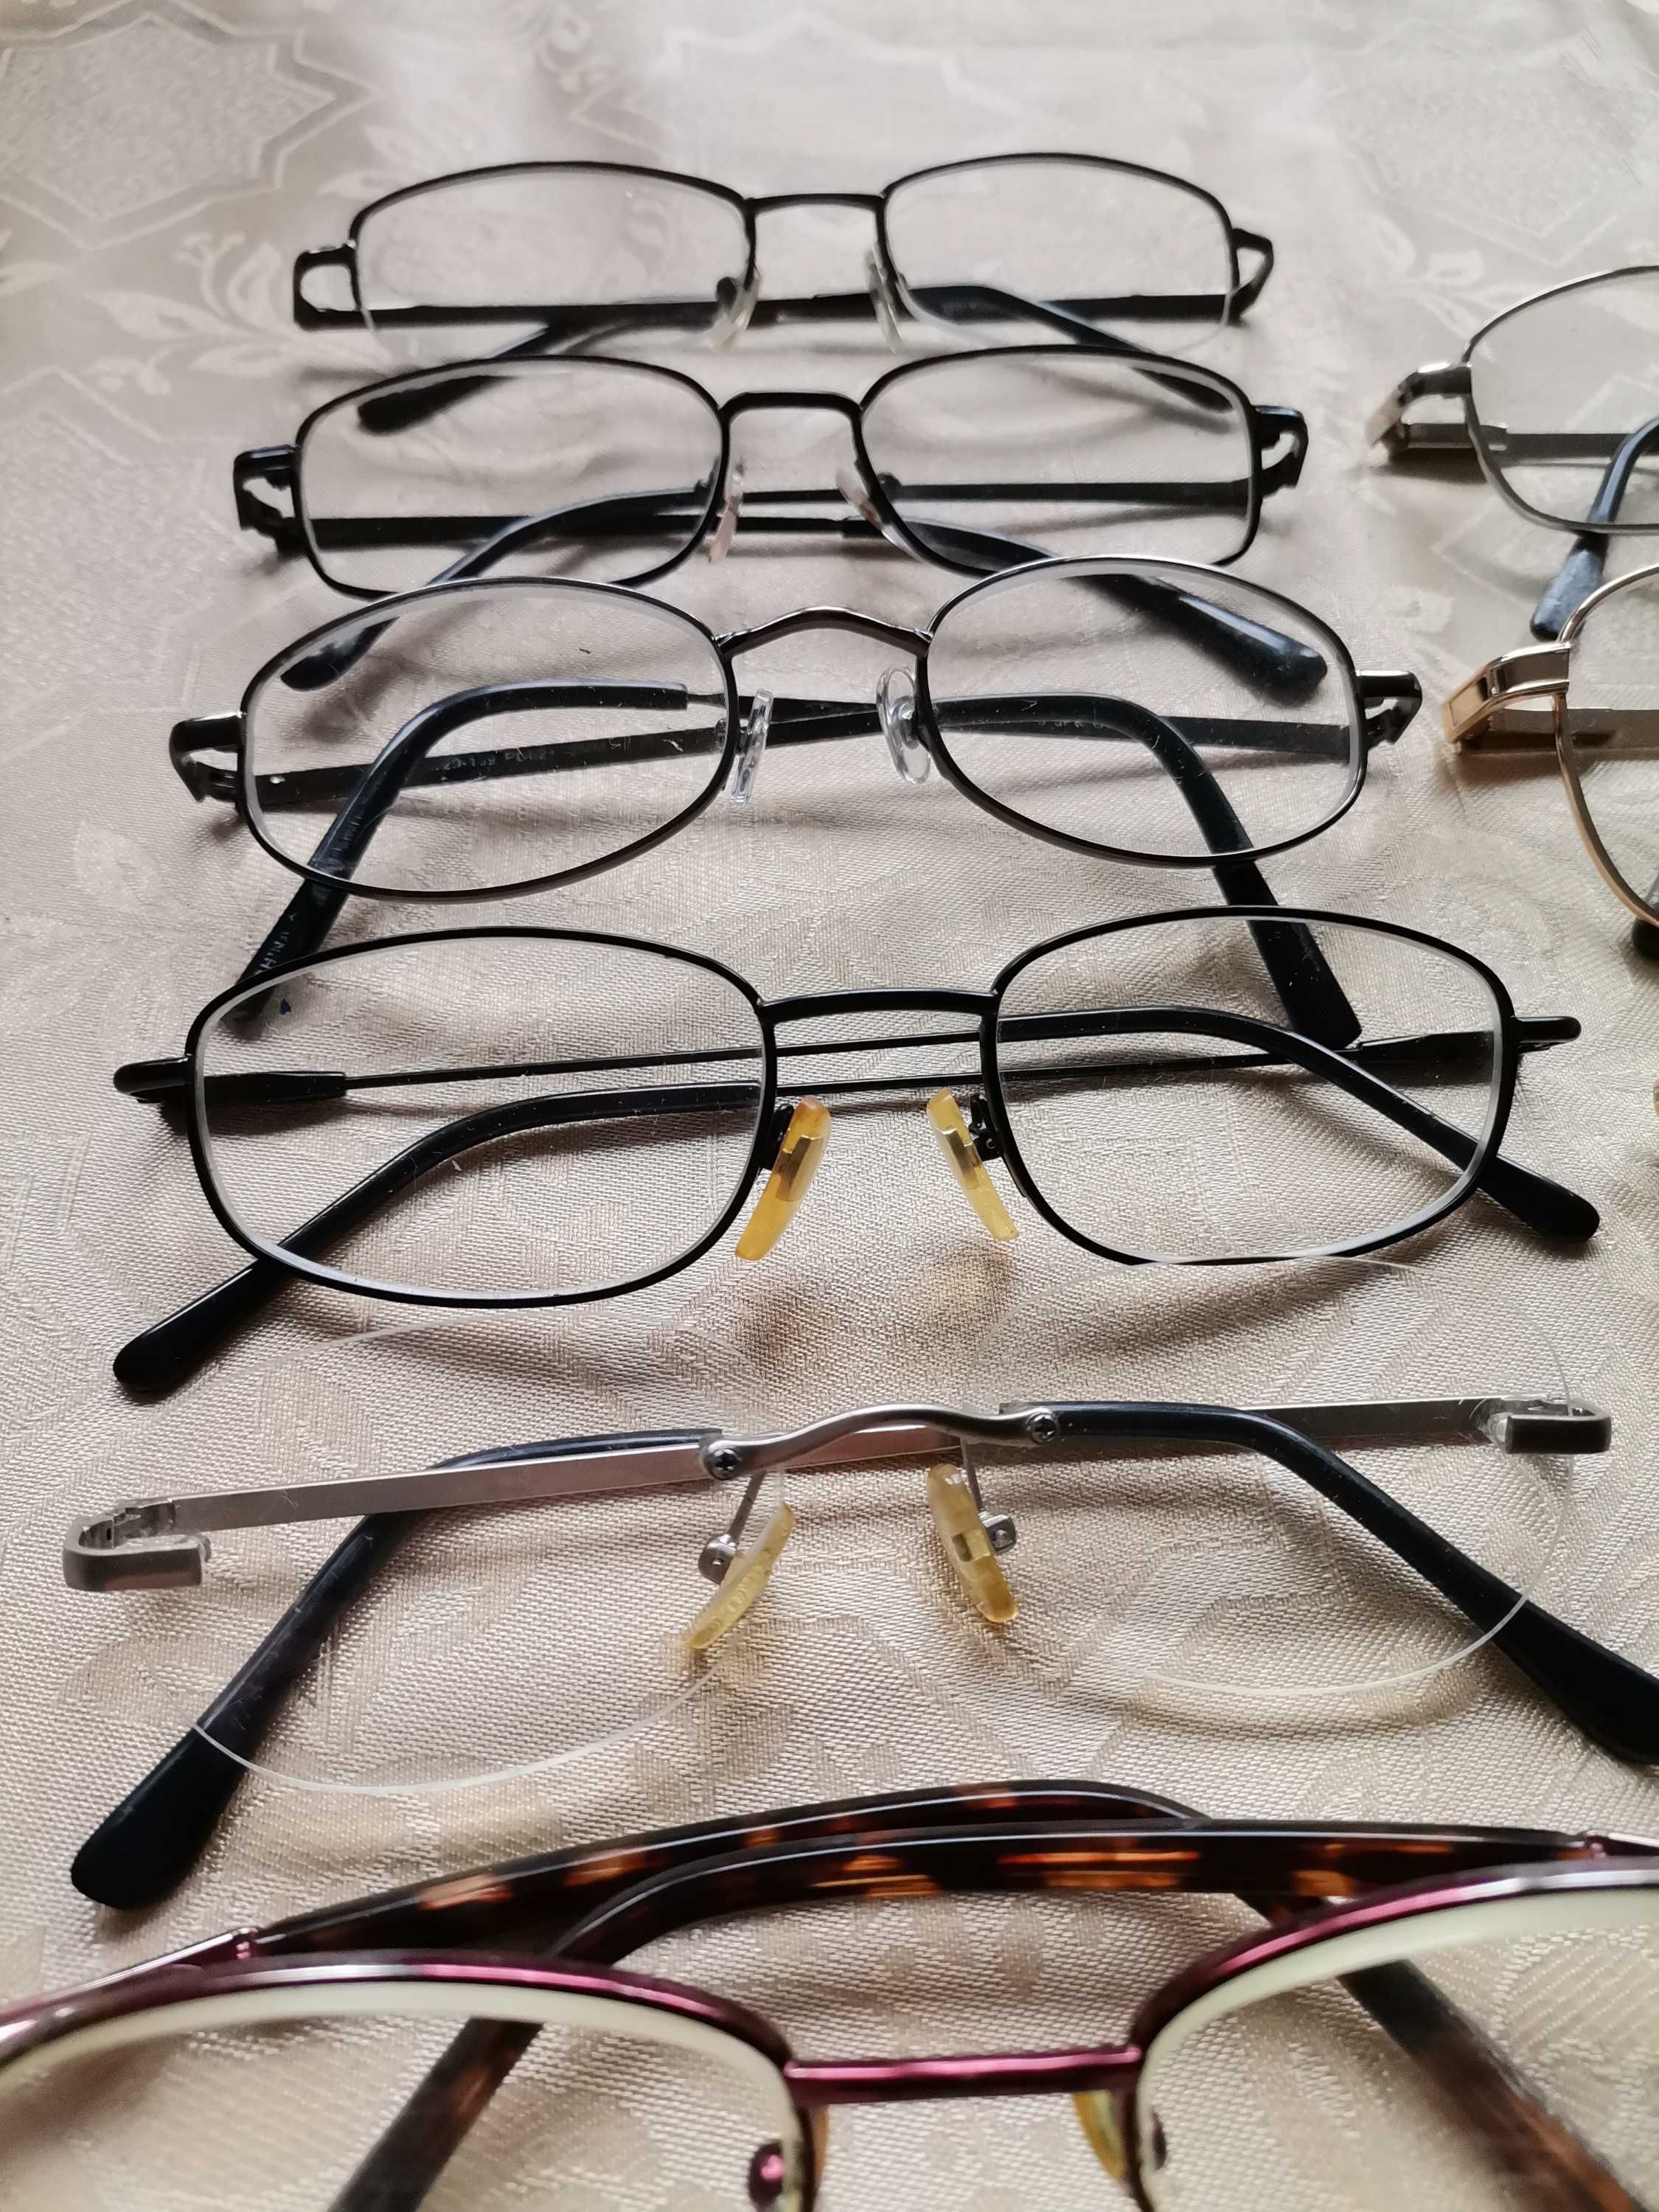 Okulary korekcyjne, stare okulary, oprawki okularowe - zestaw